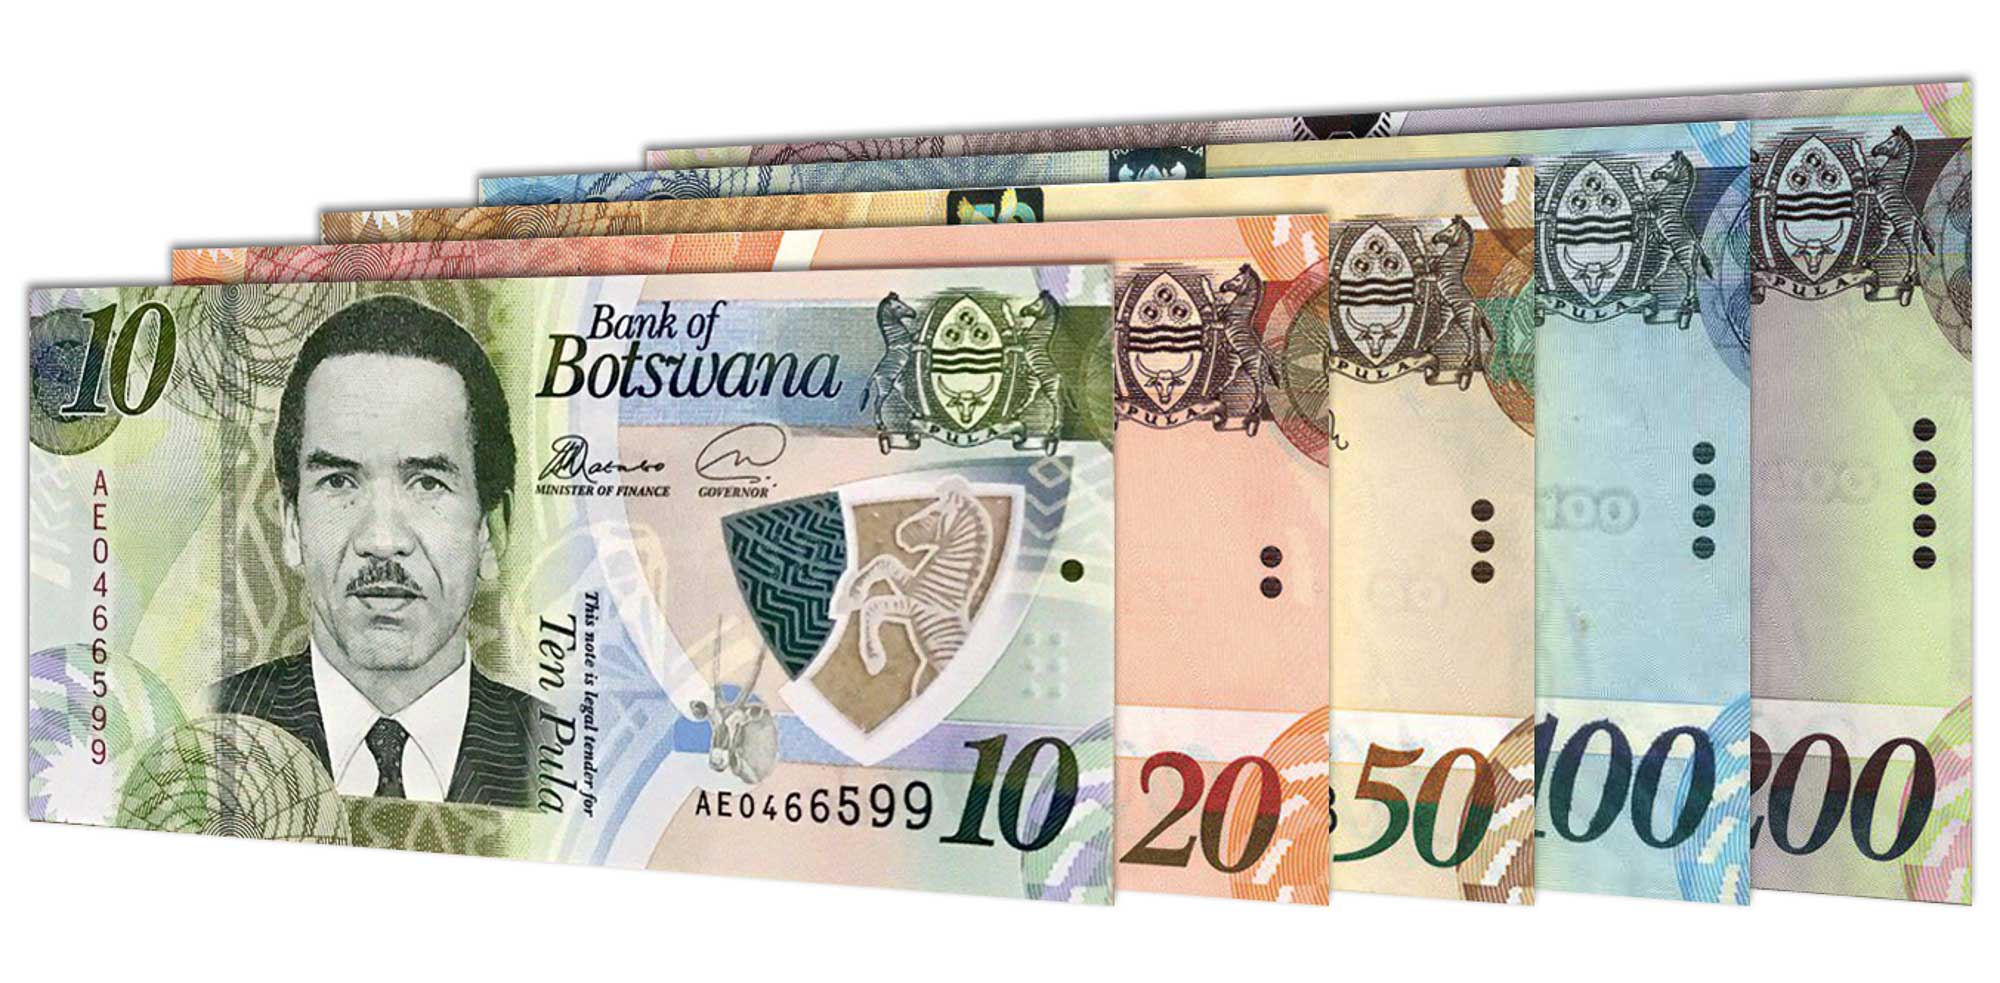 Mobile Money Botswana